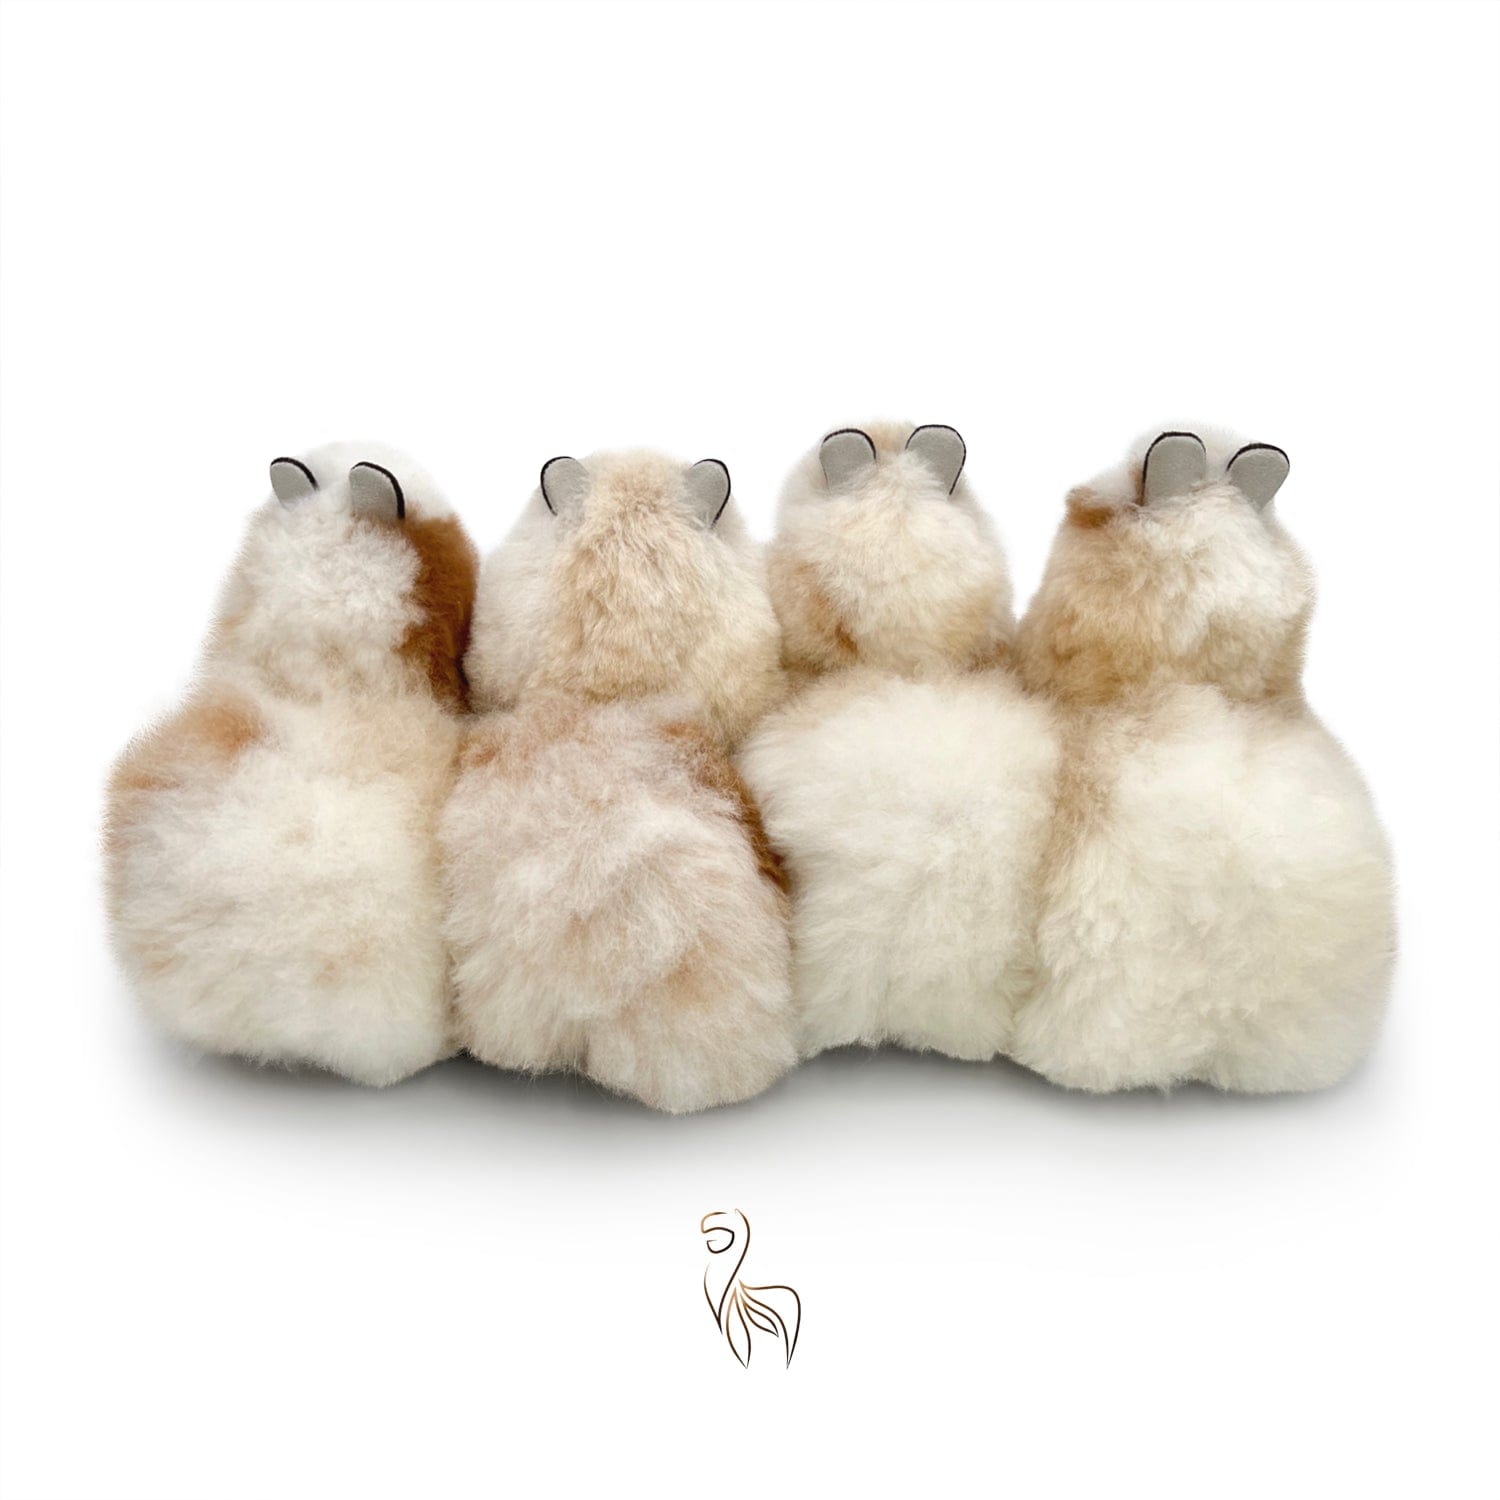 Cookies 'n Cream - Juguete pequeño de alpaca (23 cm) - Edición limitada